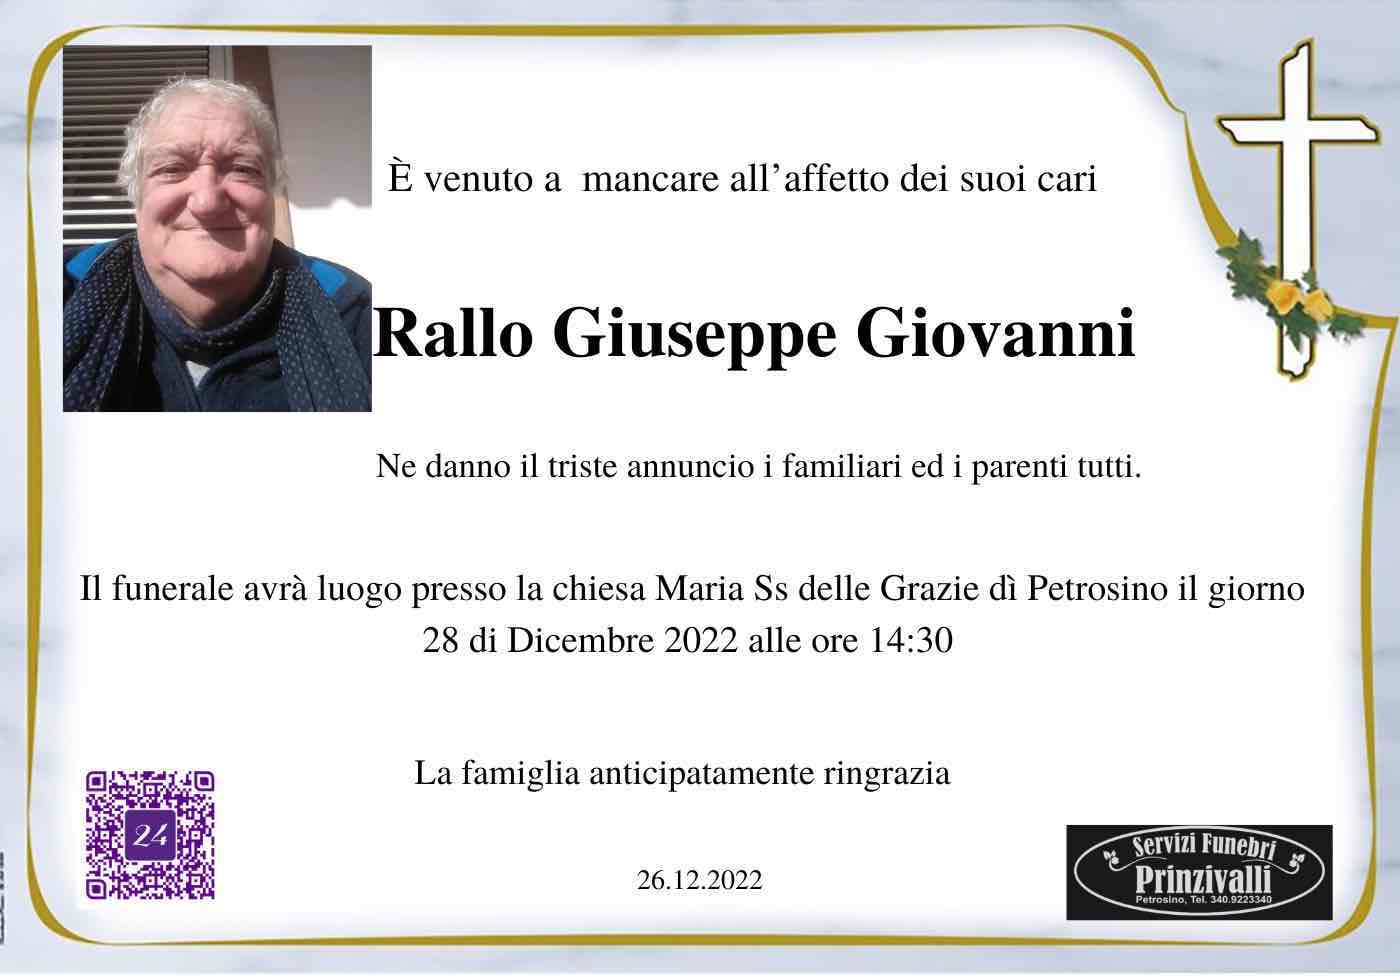 Giuseppe Giovanni Rallo